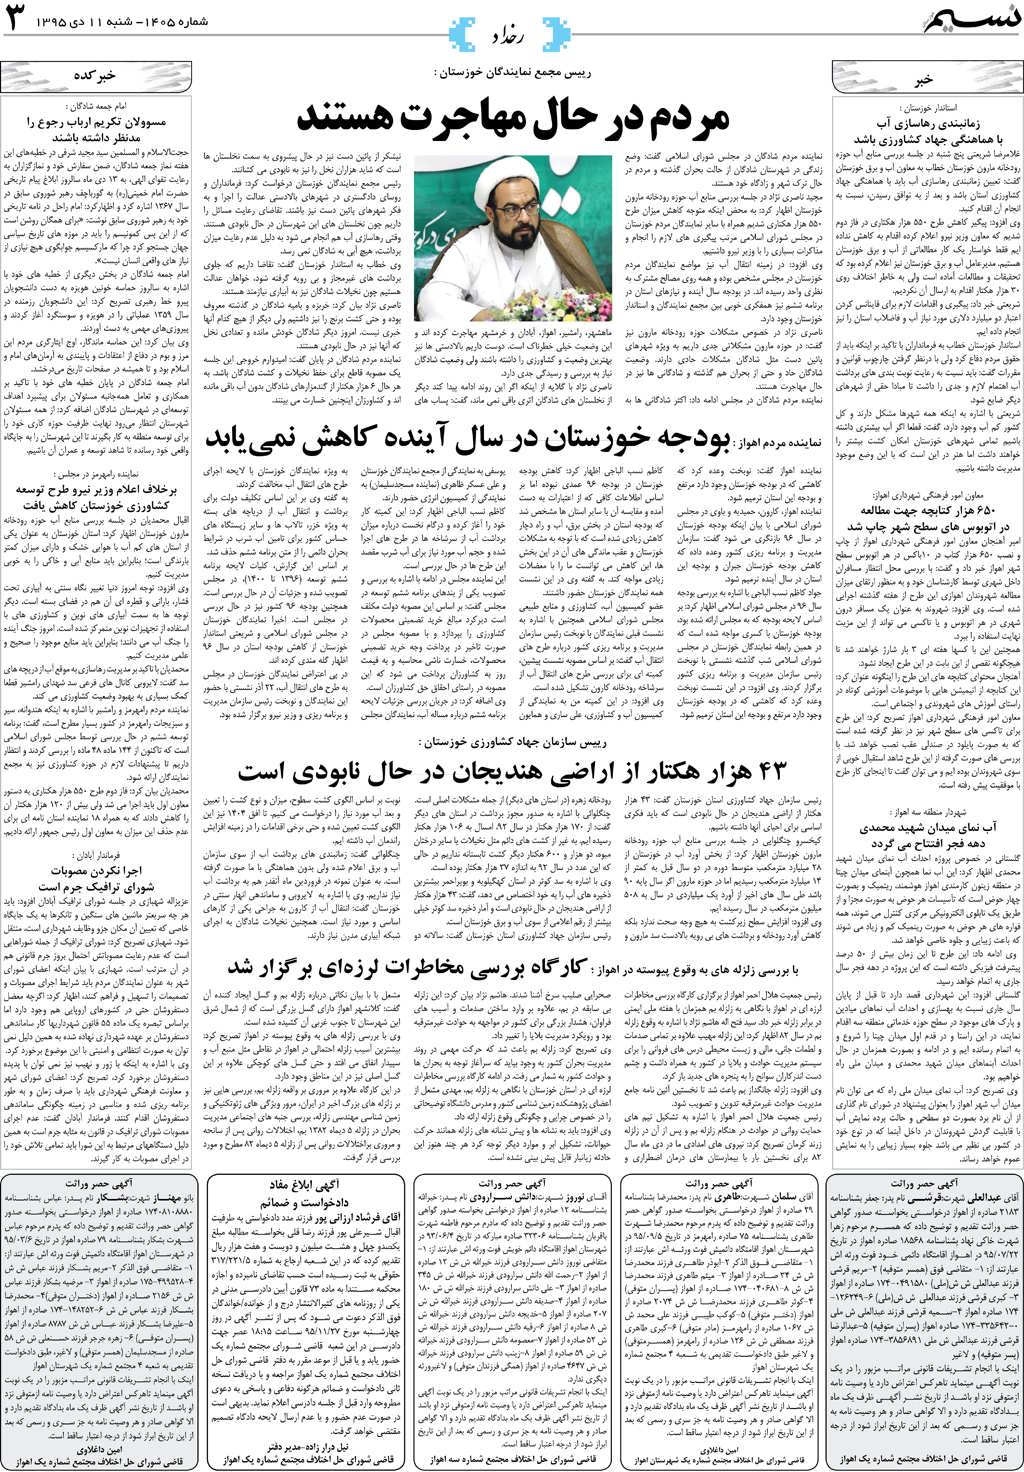 صفحه رخداد روزنامه نسیم شماره 1405